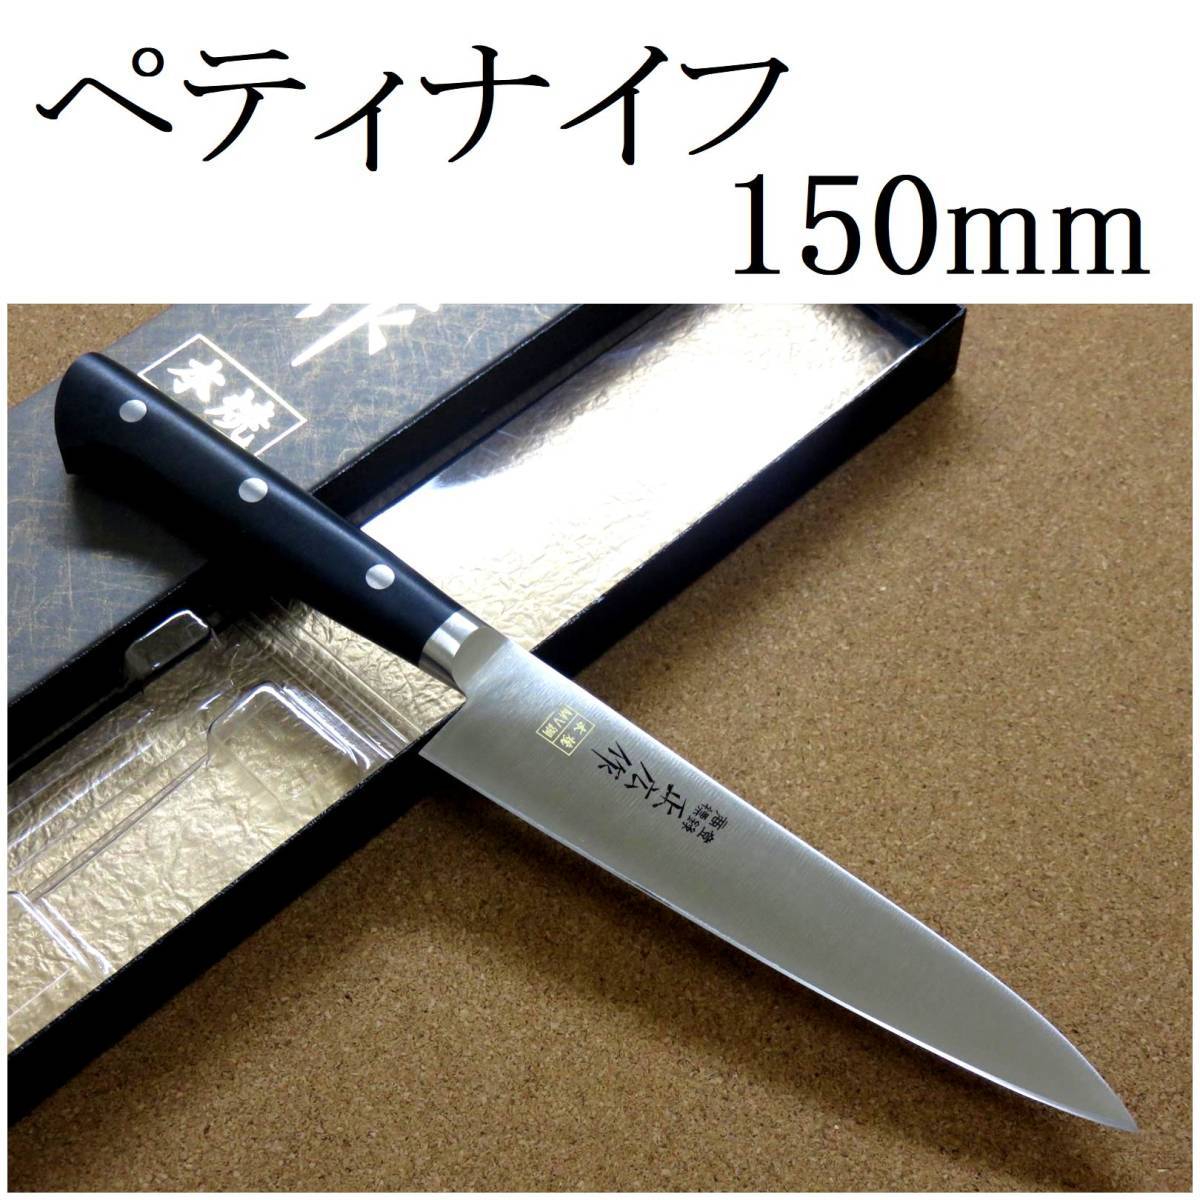 関の刃物 ペティナイフ 15cm (150mm) 正広 本焼 MV鋼 MBS-26 モリブデンバナジウム 果物包丁 野菜 果物の皮むき 小型両刃ナイフ 日本製